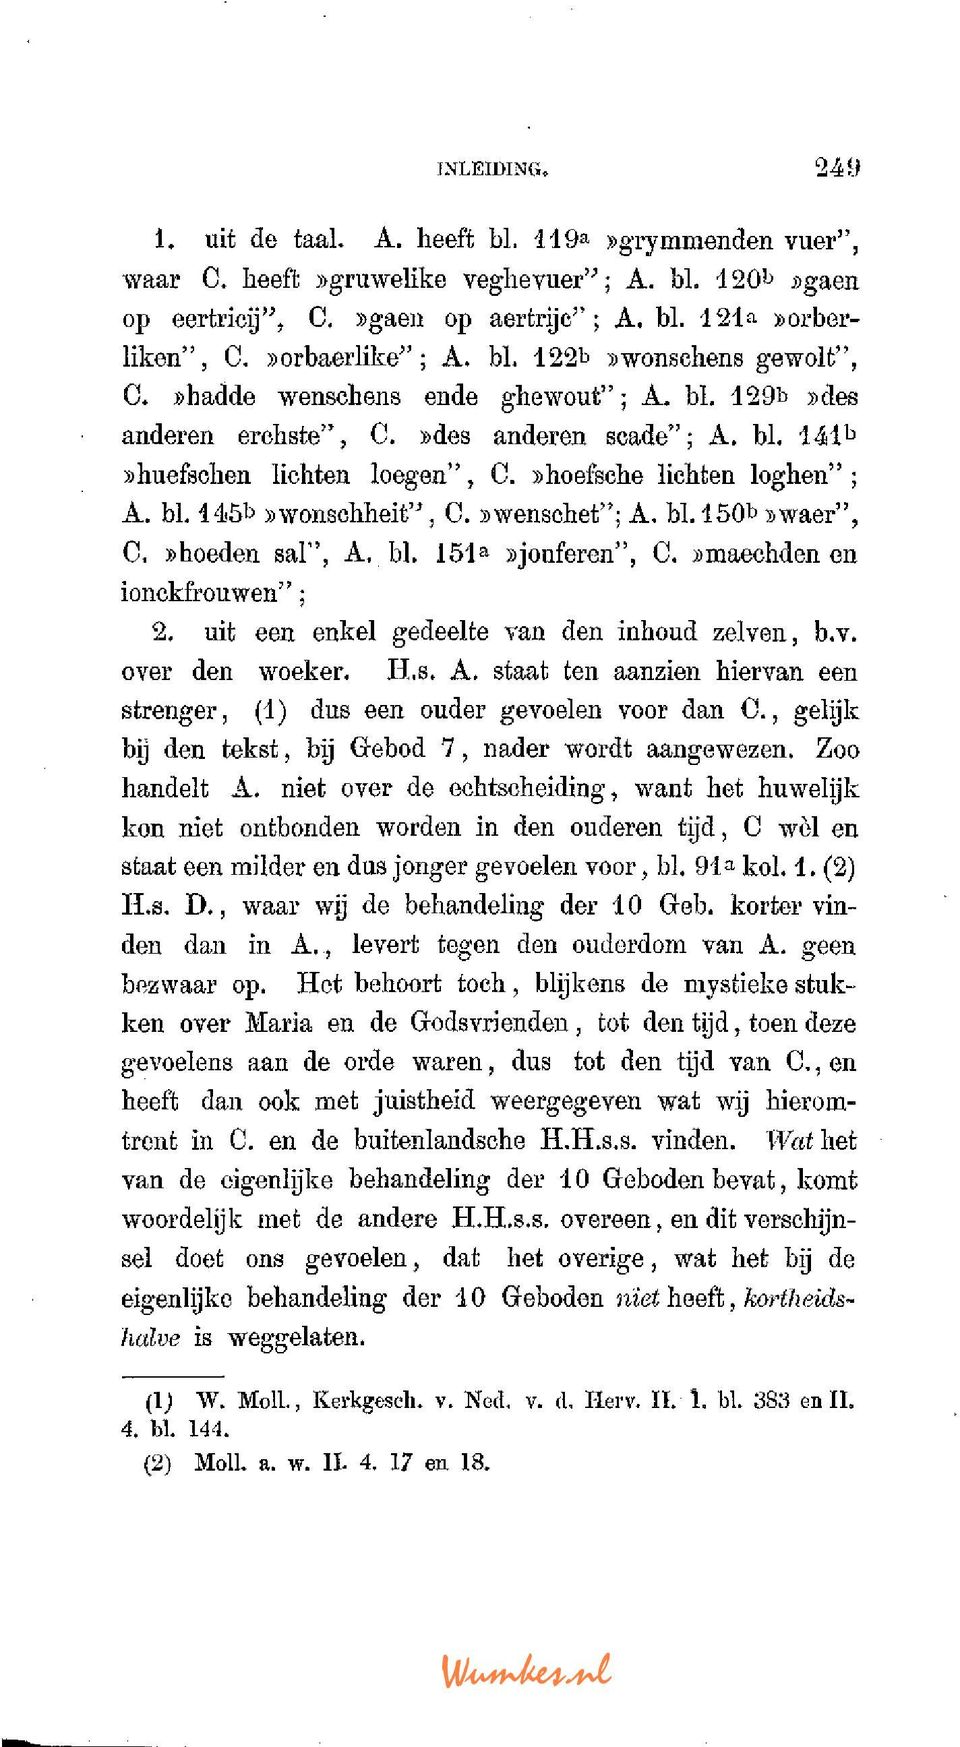 »hoefsche lichten loghen" ; A. bl. 145b ))wonschheit", C. swenschet"; A. bl. 150»waer", C.»hoeden sal", A. bl. 151 a»jouferen", C.»maechden en ionckfrouwen"; 2.